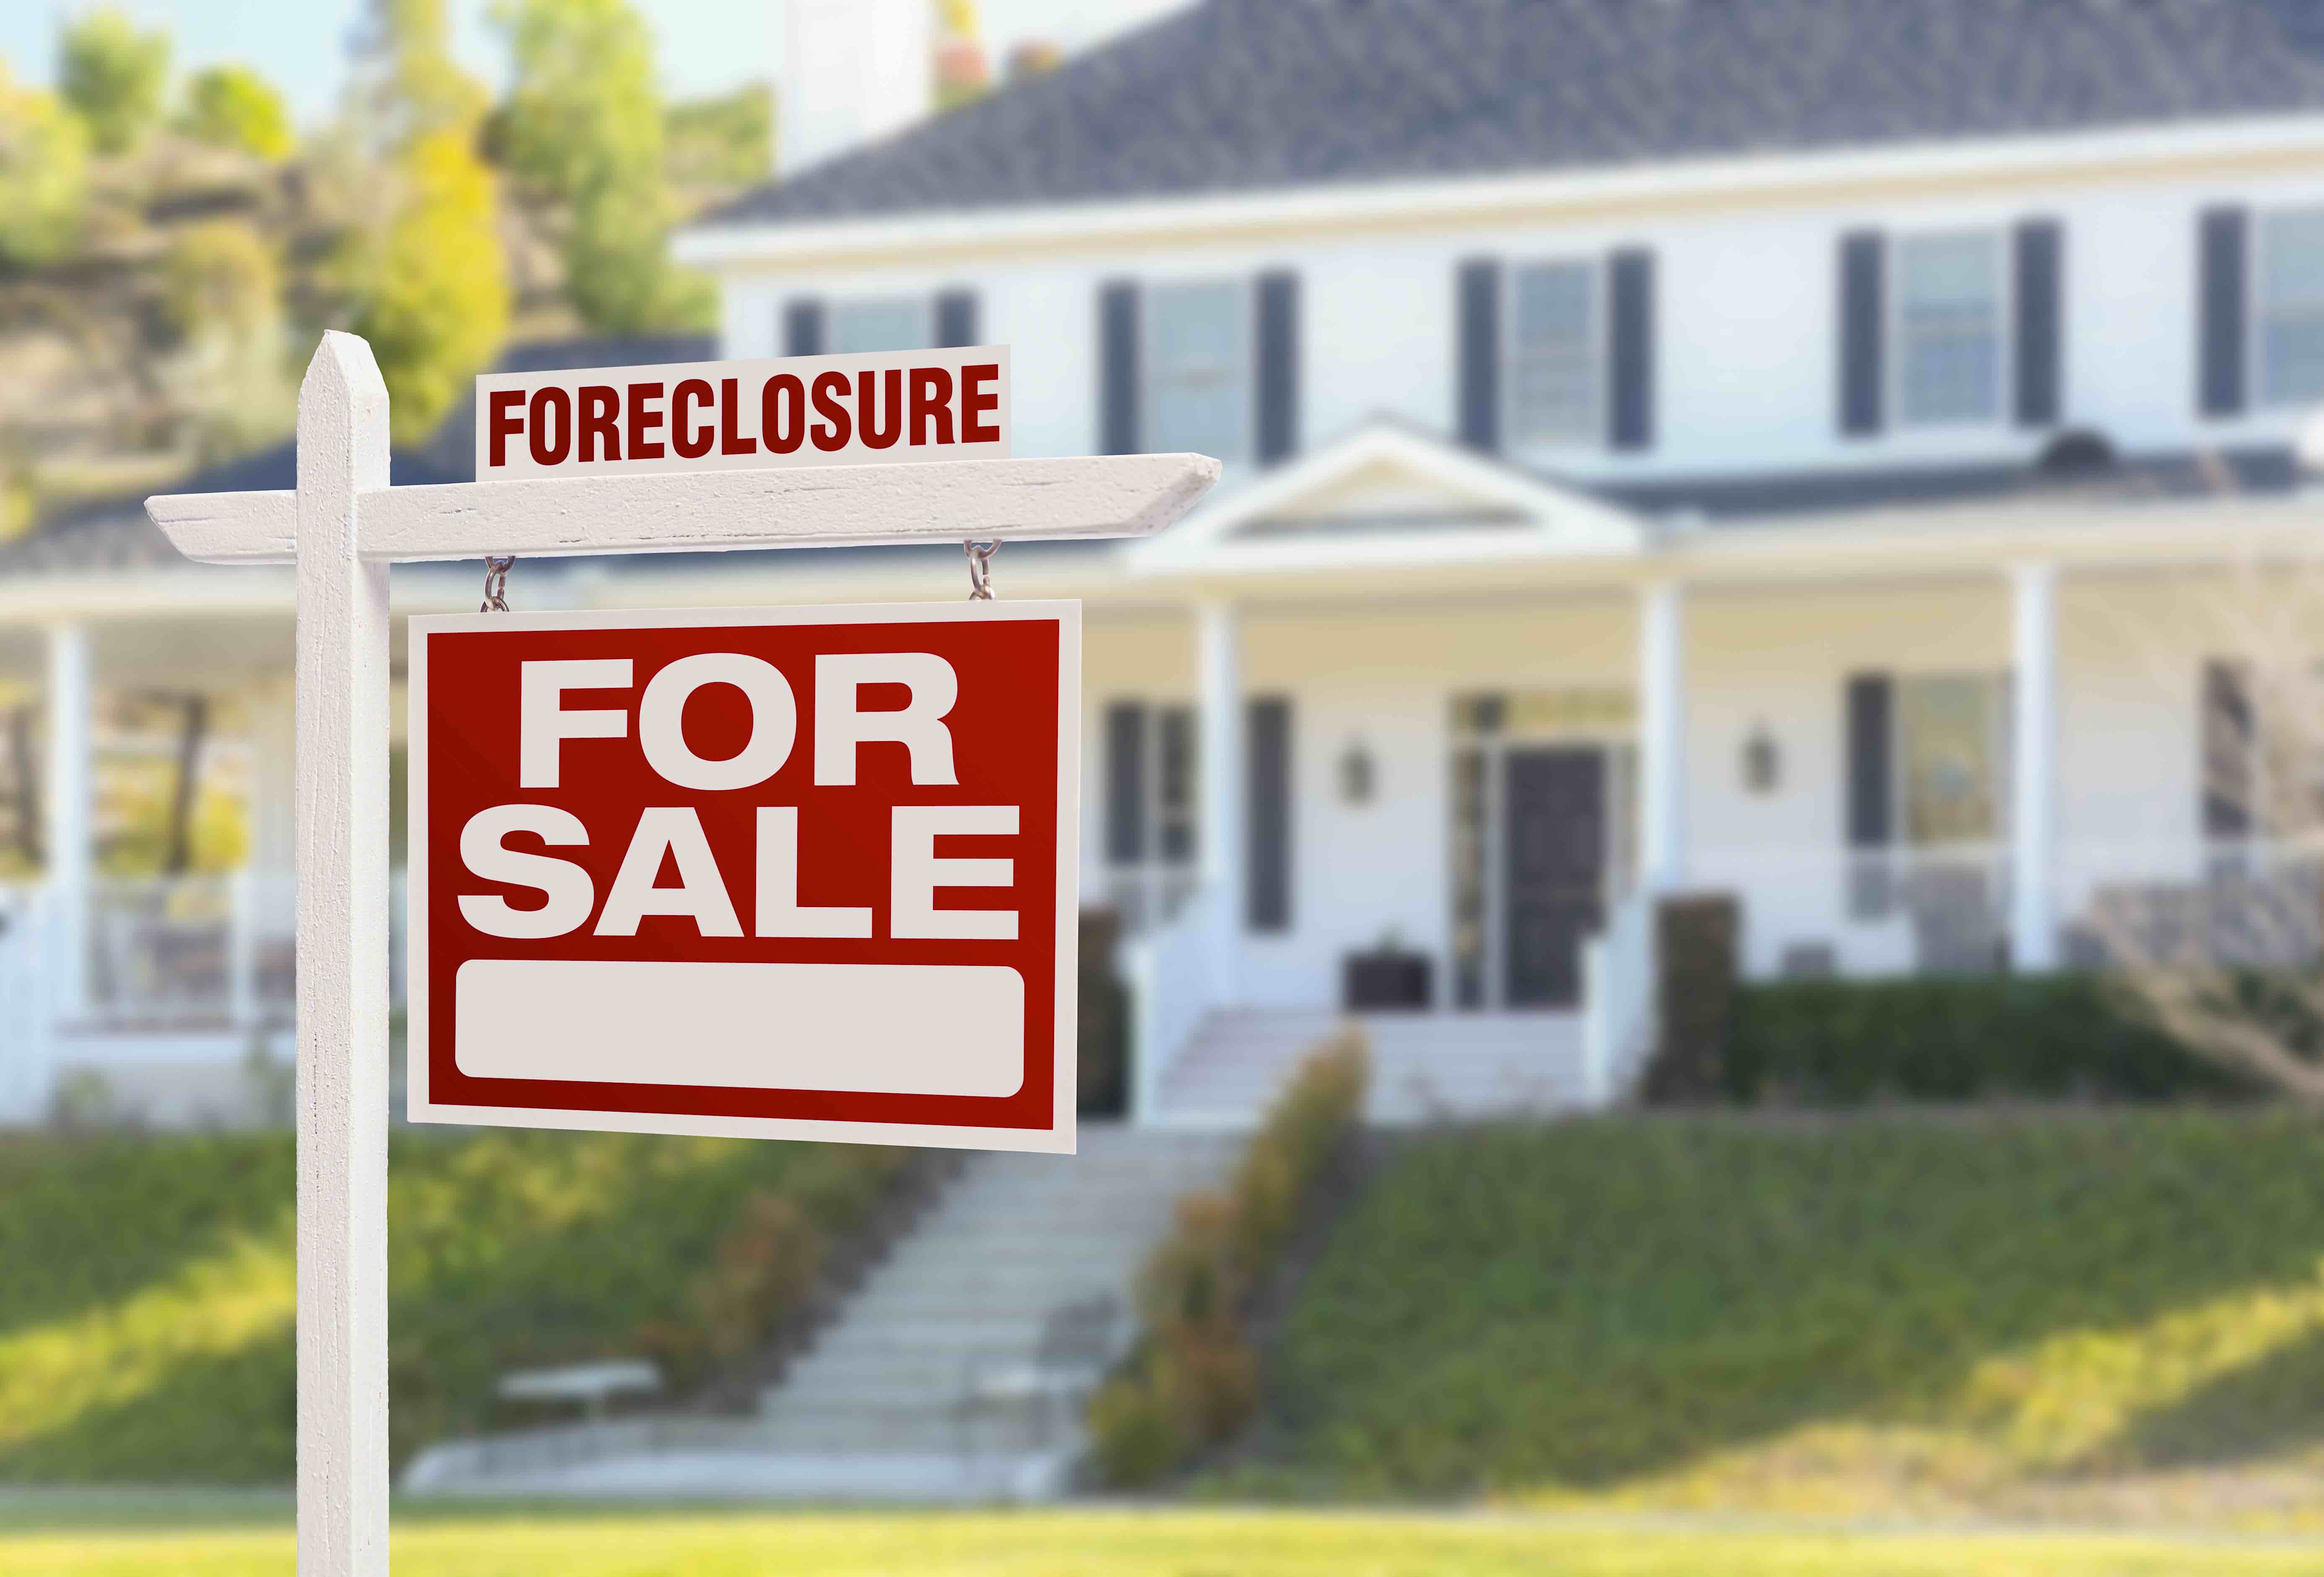 Foreclosure relief